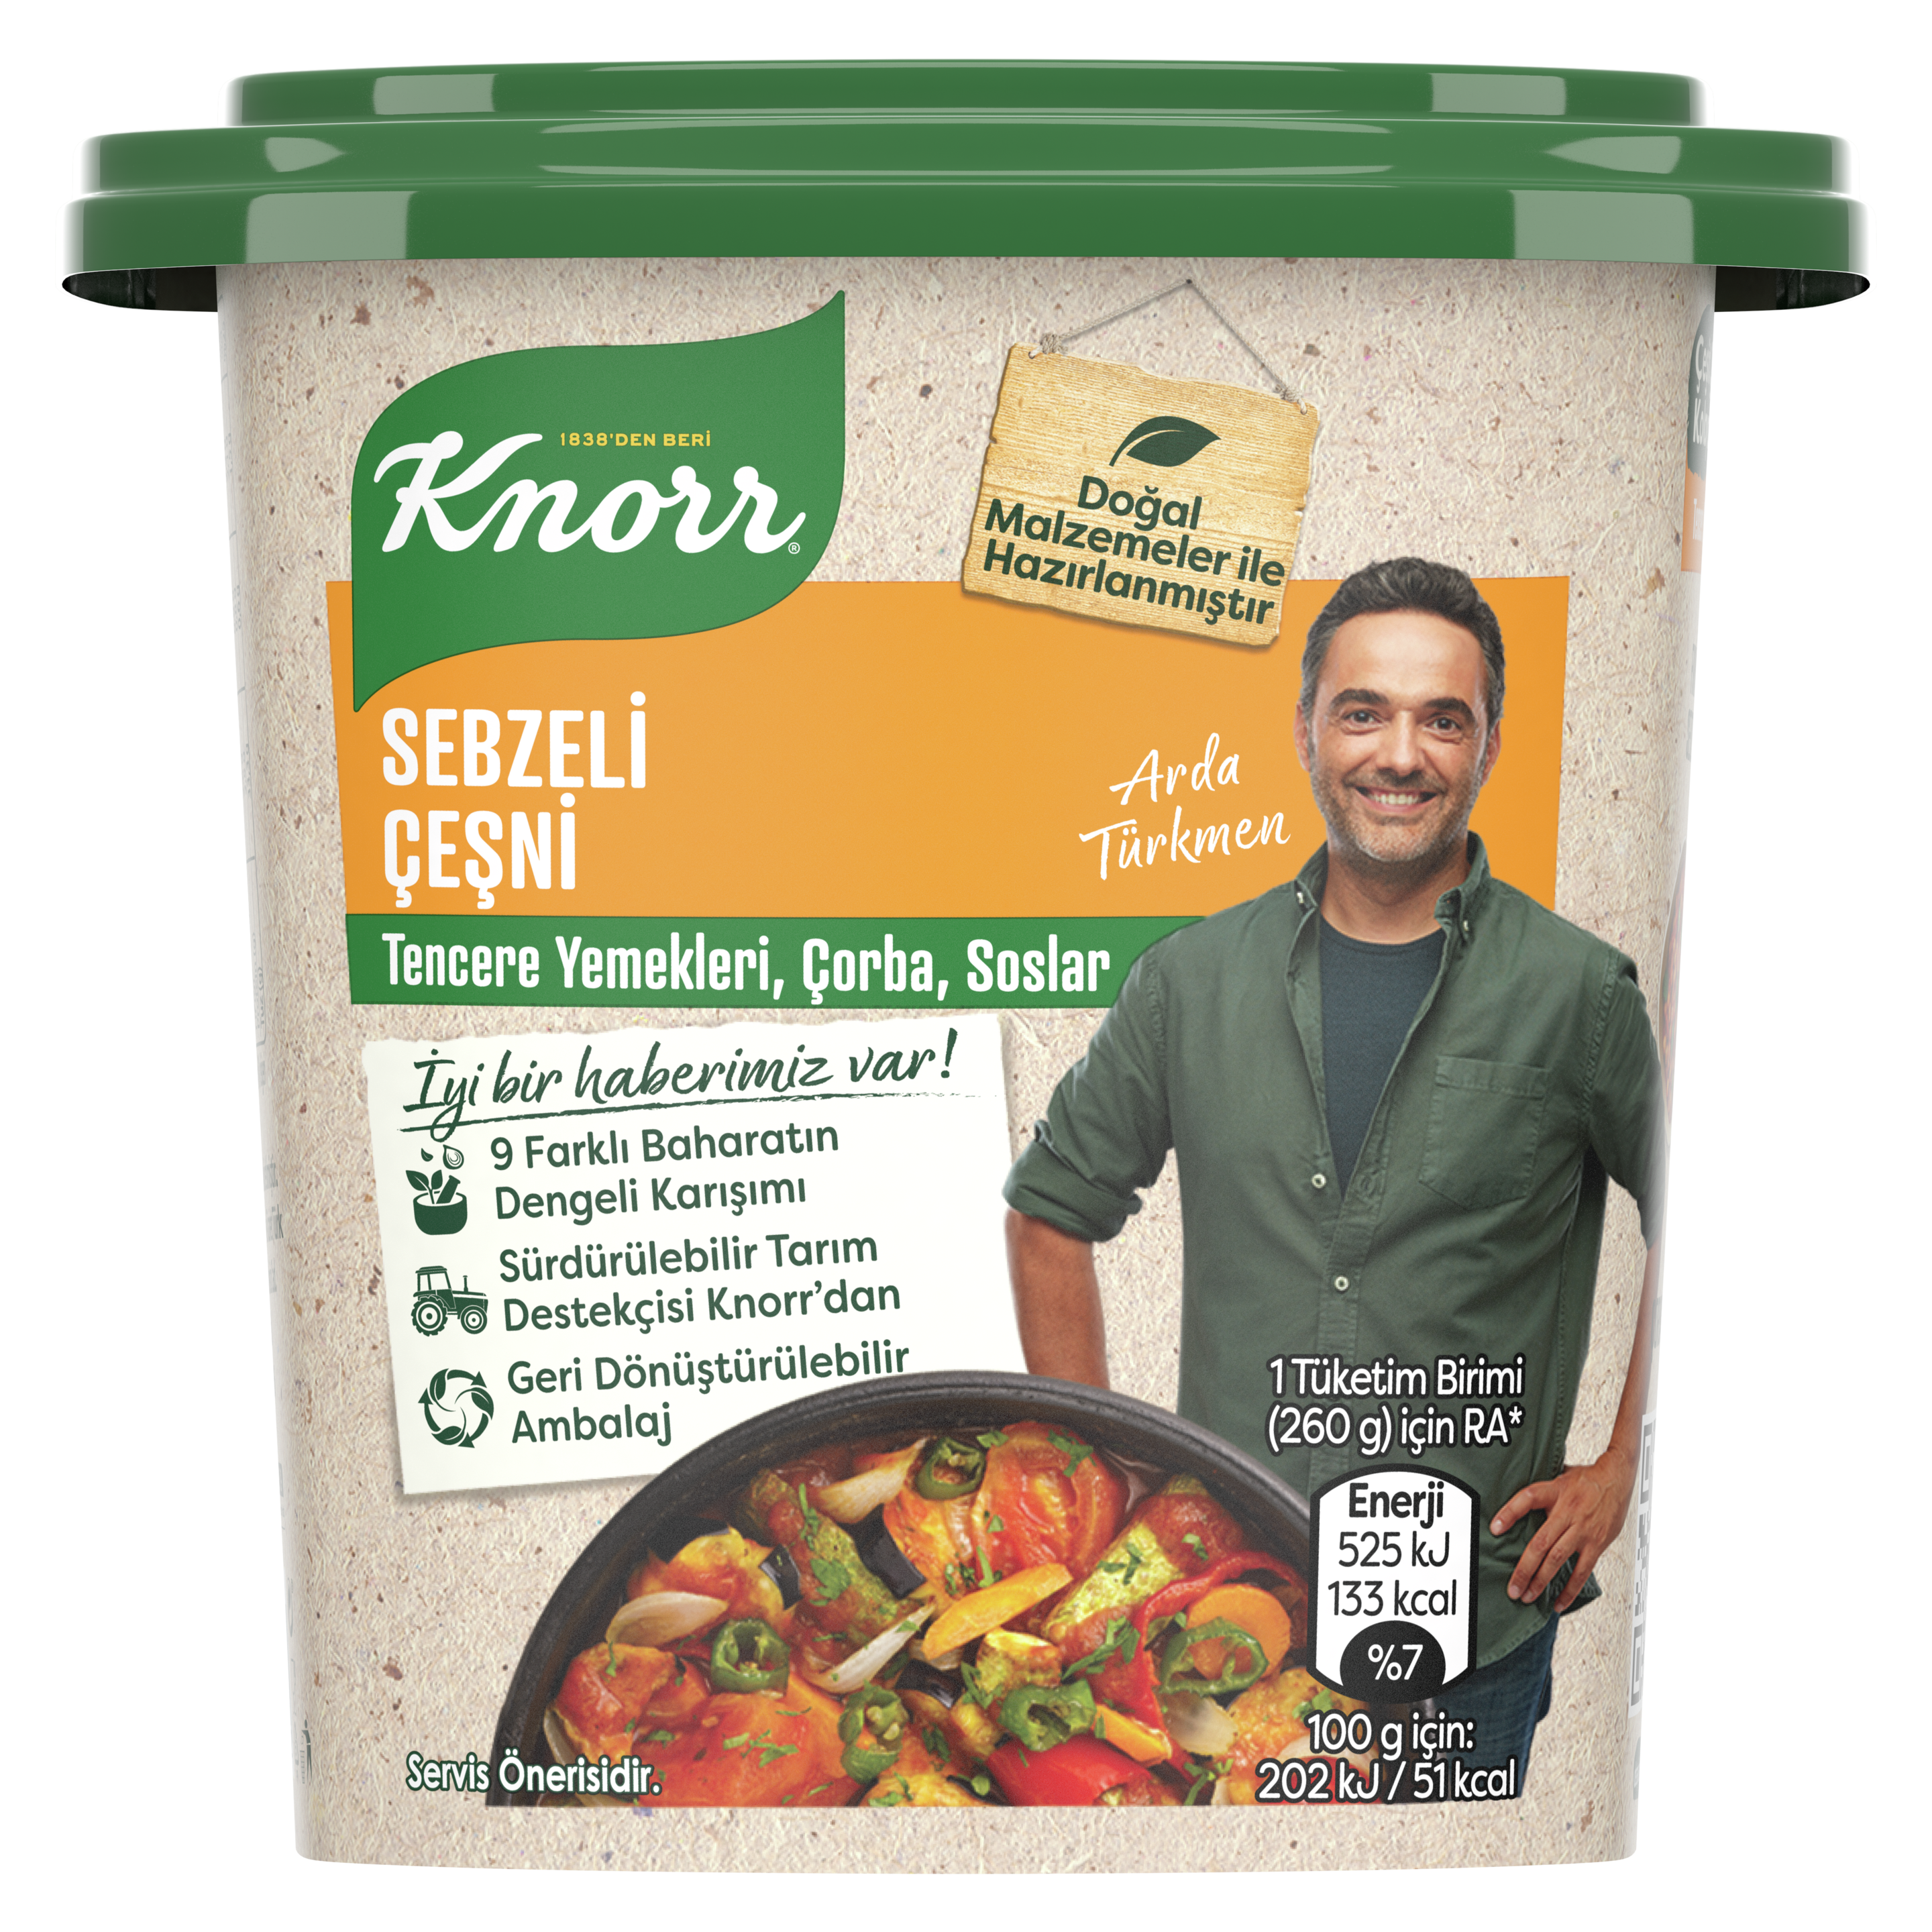 Knorr Tencere Yemekleri İçin Baharatlı Çeşni